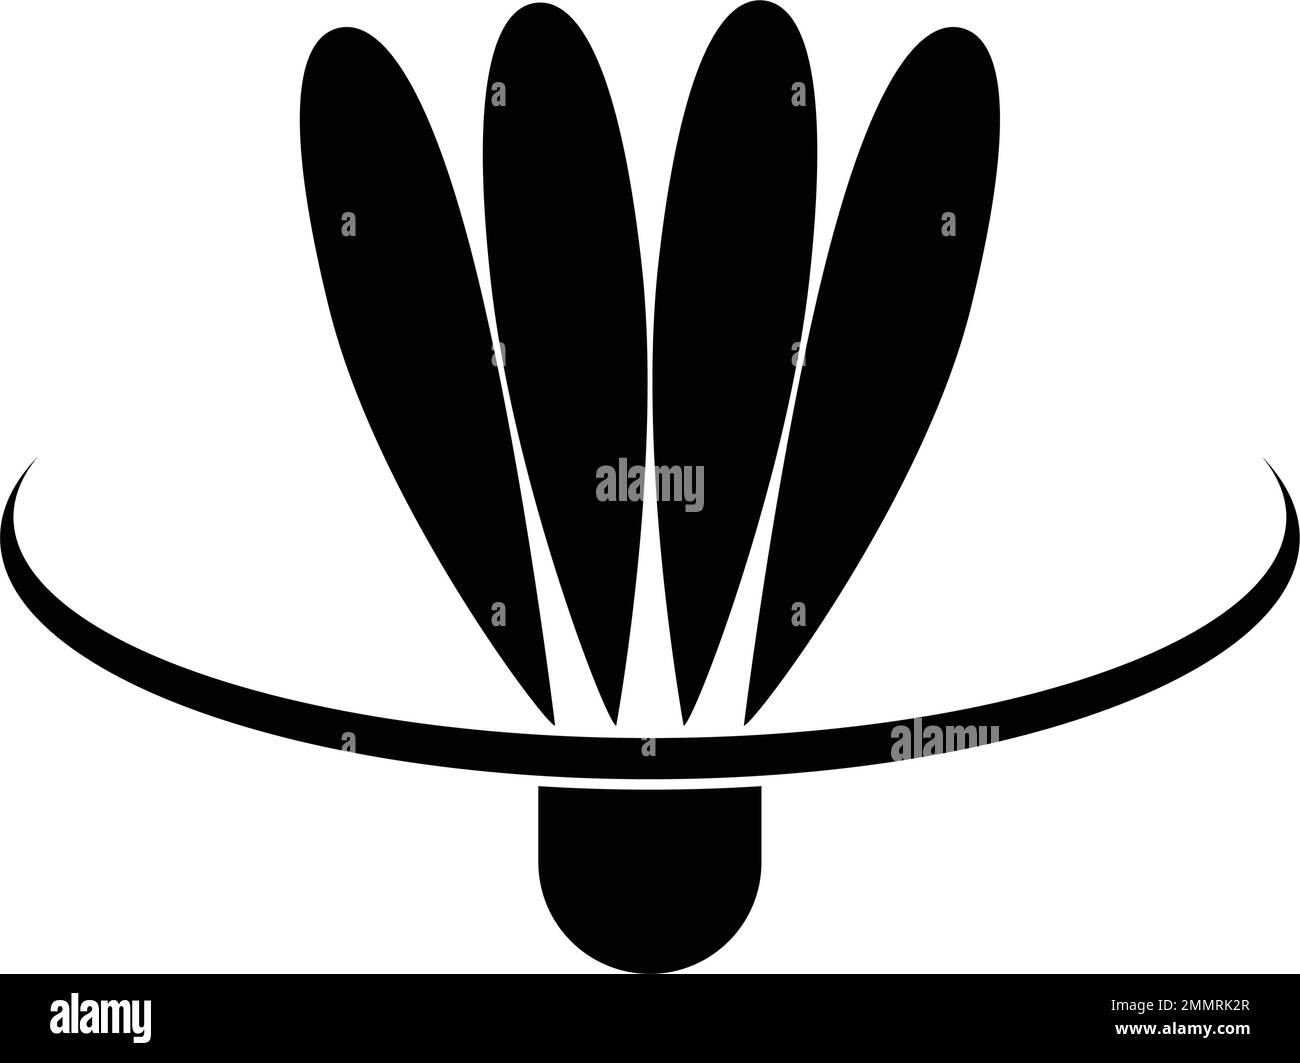 Vektor-Grafikdesign mit Badminton-Logo Stock Vektor